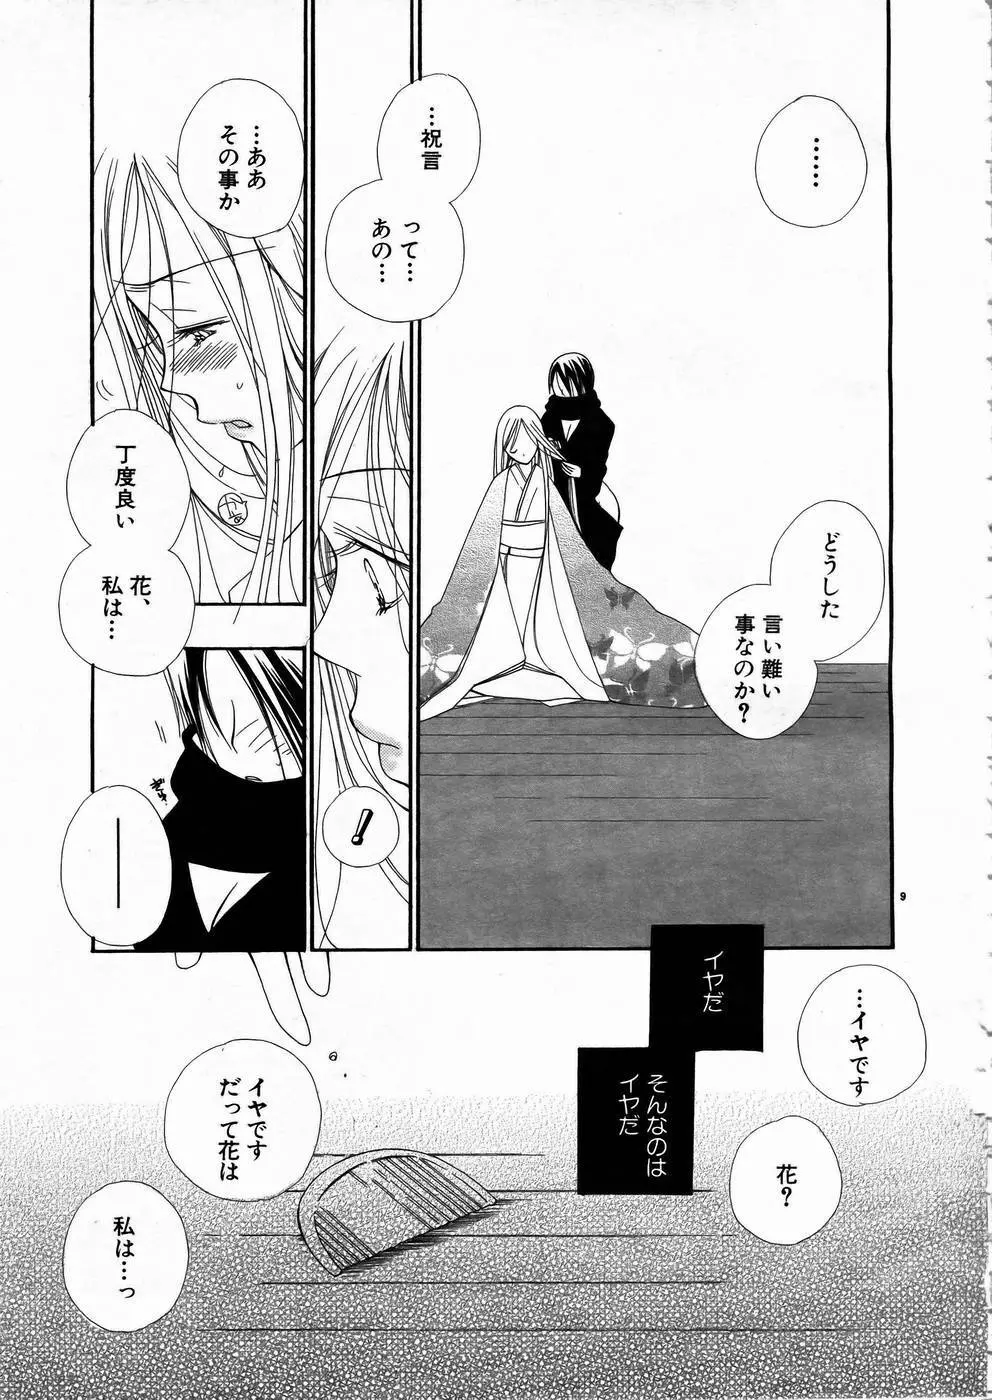 少女剣客凌辱コミック Vol.01 くノ一斬! 8ページ